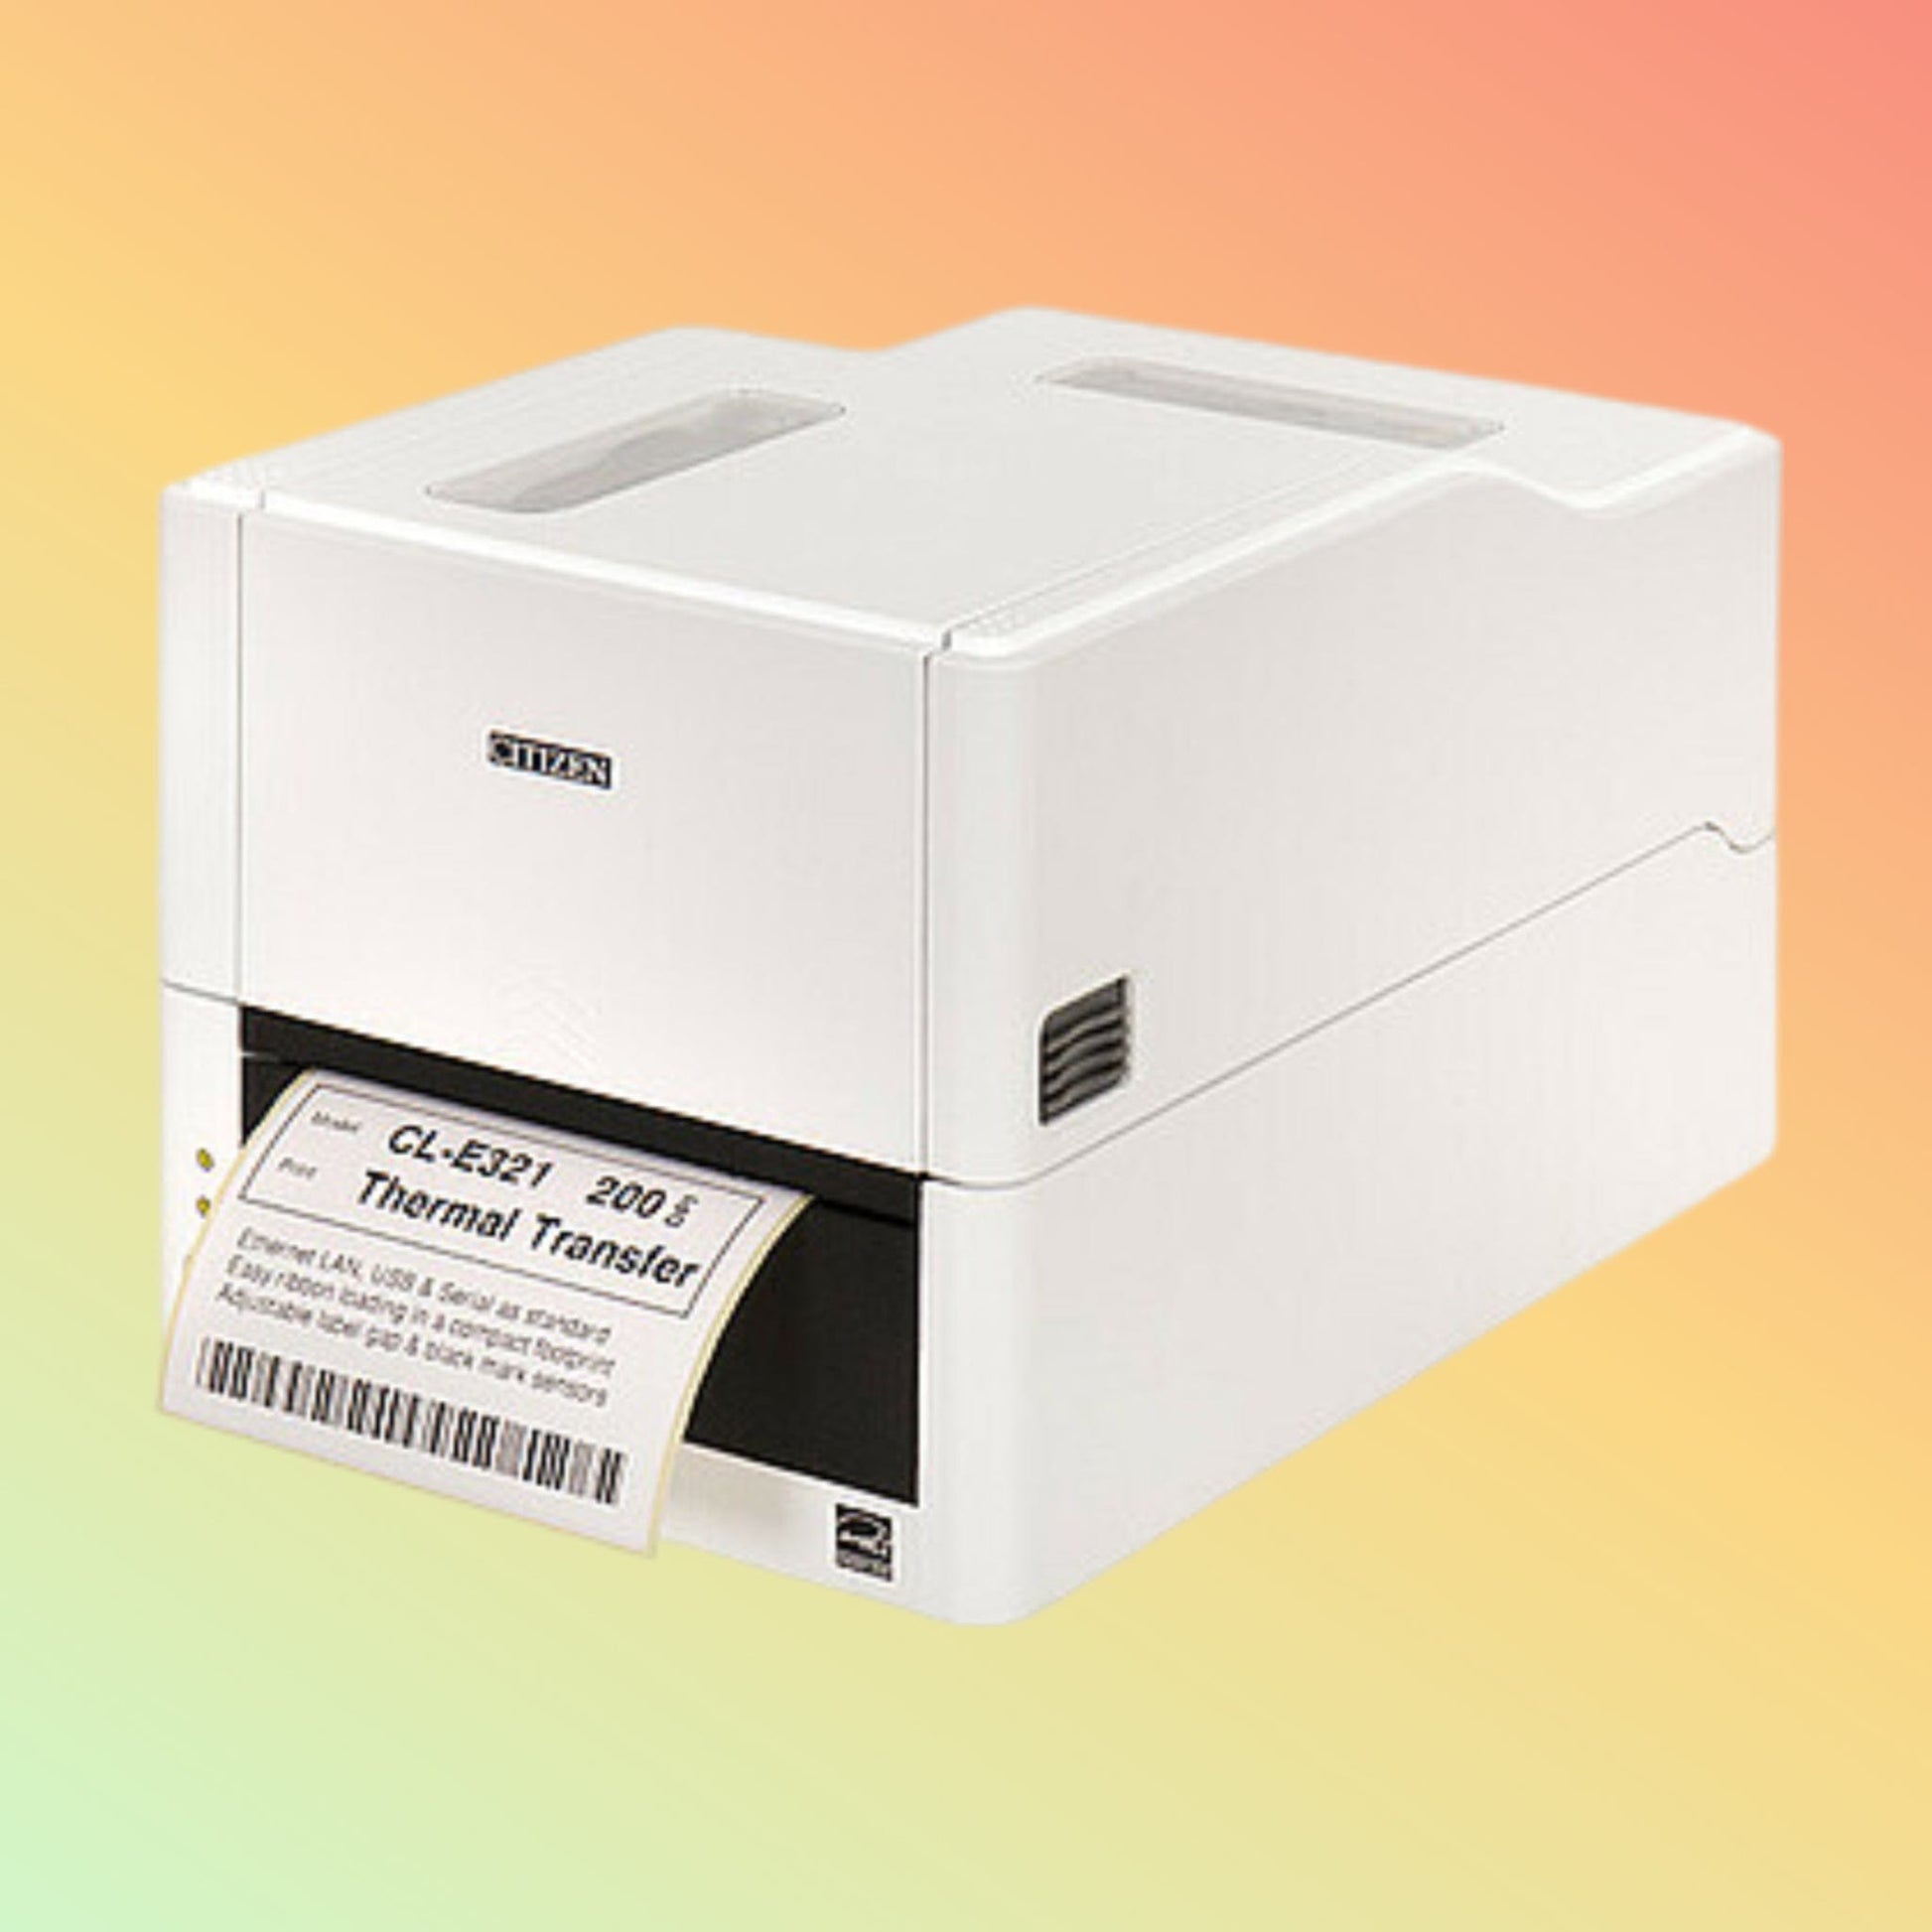 Citizen CL-E331 Barcode Printer - Neotech